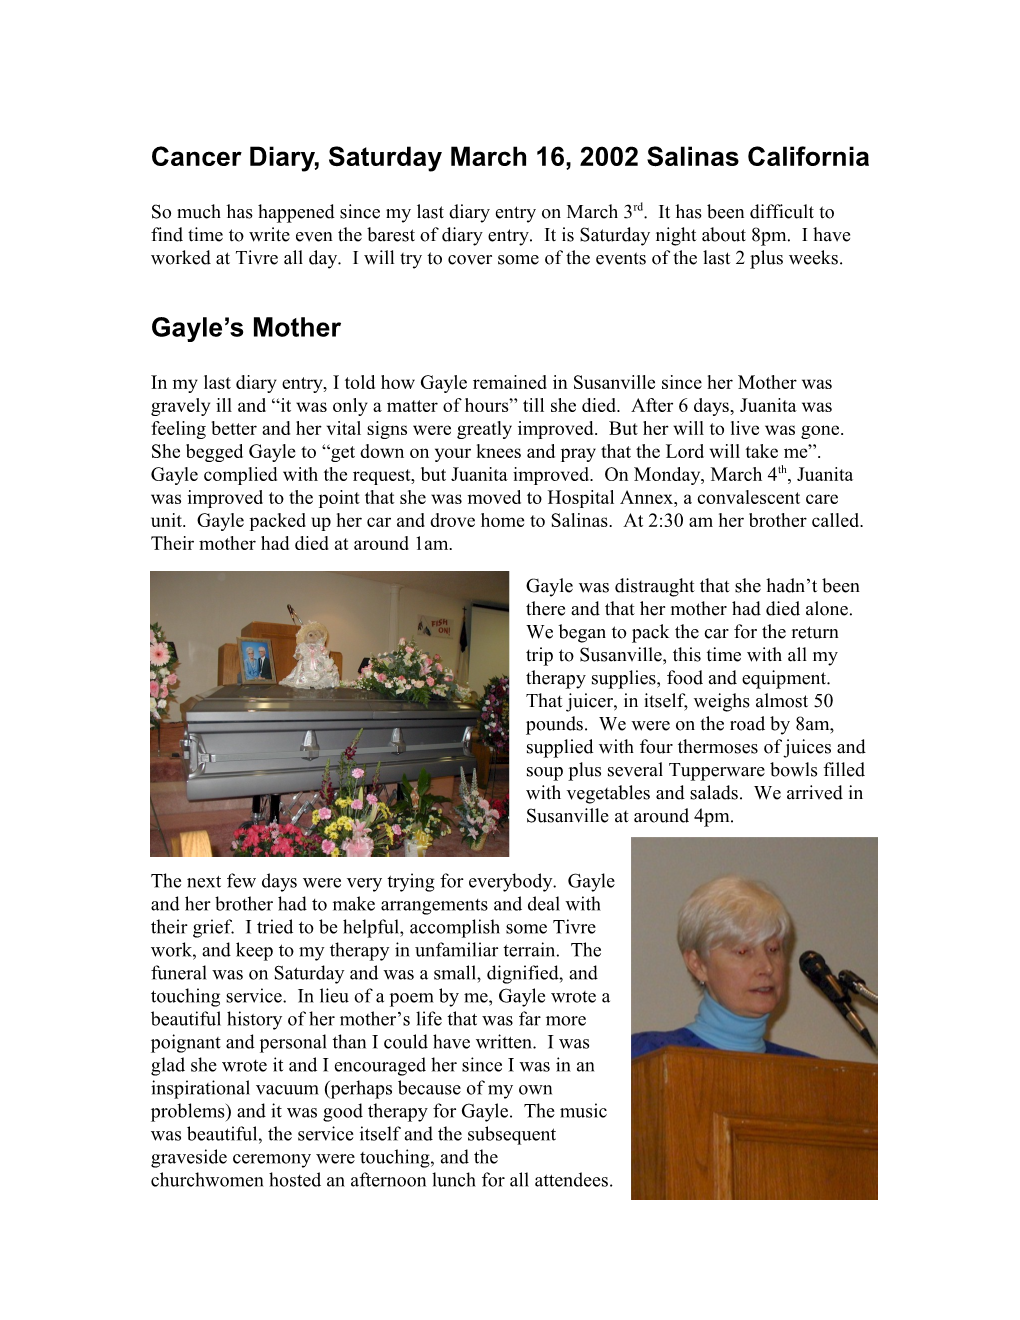 Cancer Diary, Tuesday November 6, 2001, Salinas CA